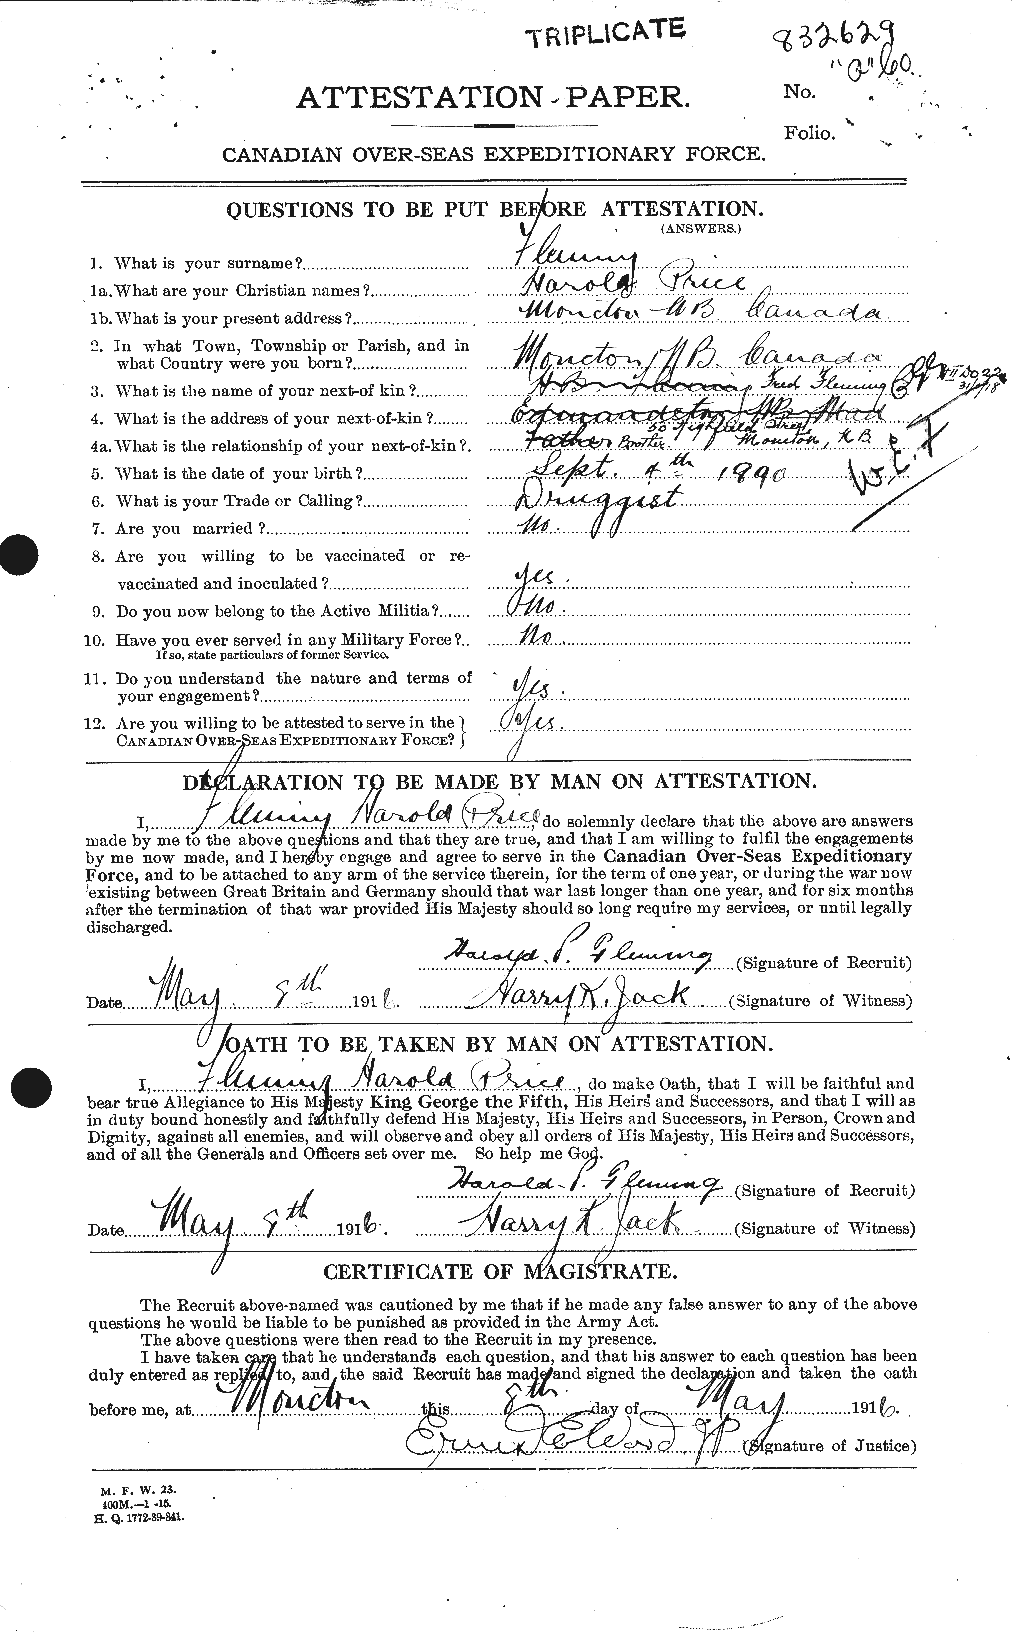 Dossiers du Personnel de la Première Guerre mondiale - CEC 326561a